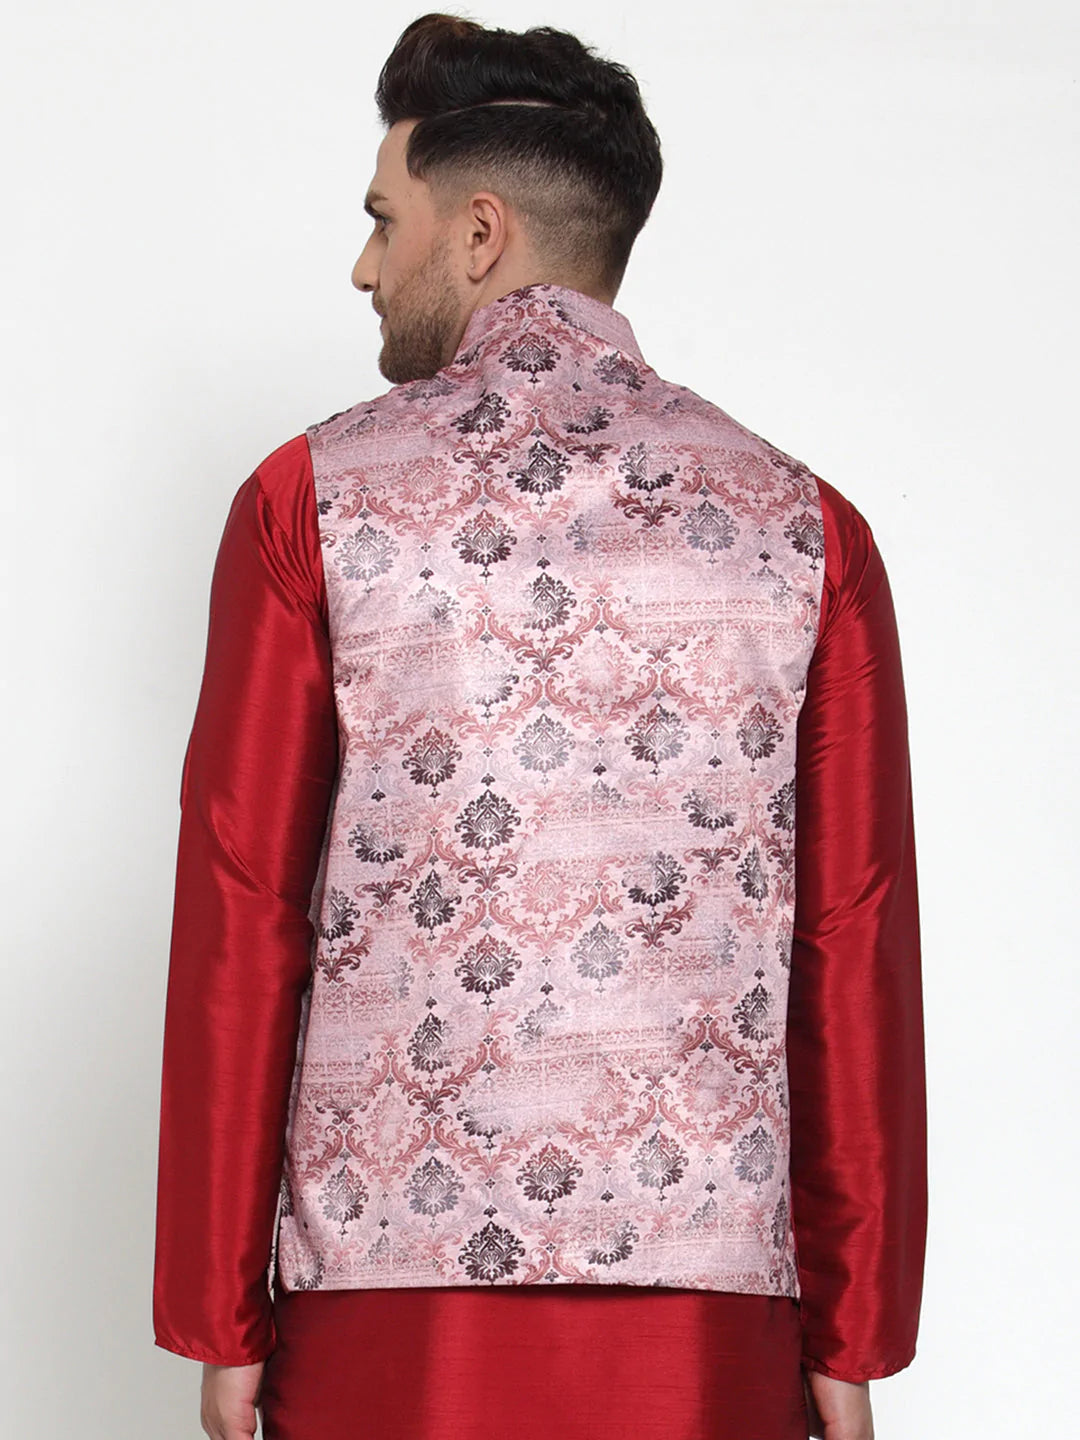 Jompers Men's Pink Printed Nehru Jacket ( JOWC 4014Pink )